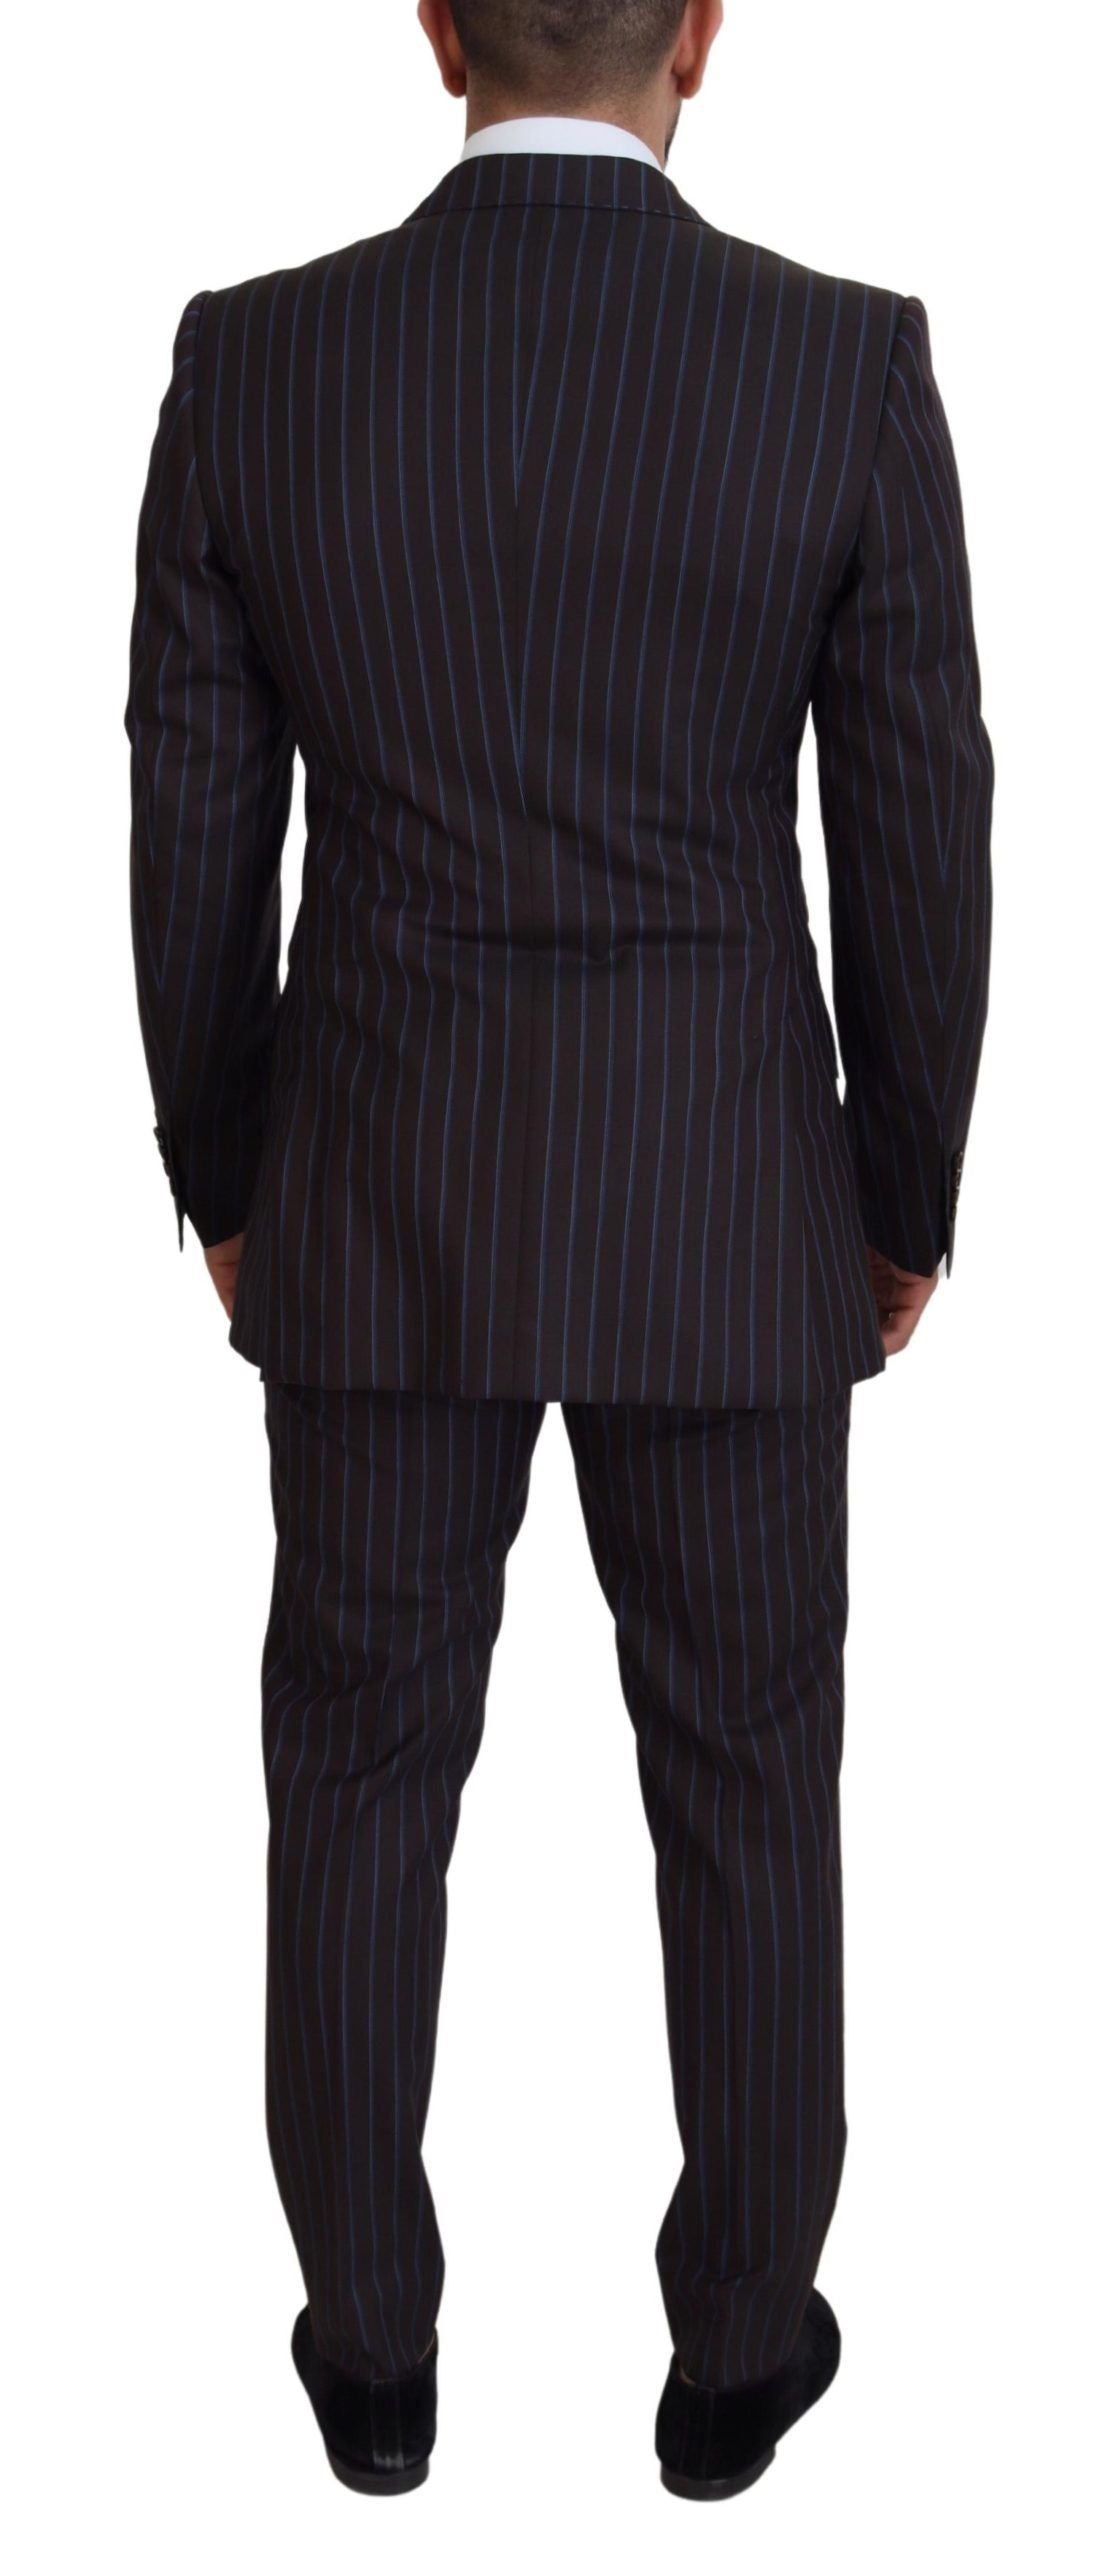 Elegant Black Striped Virgin Wool Suit